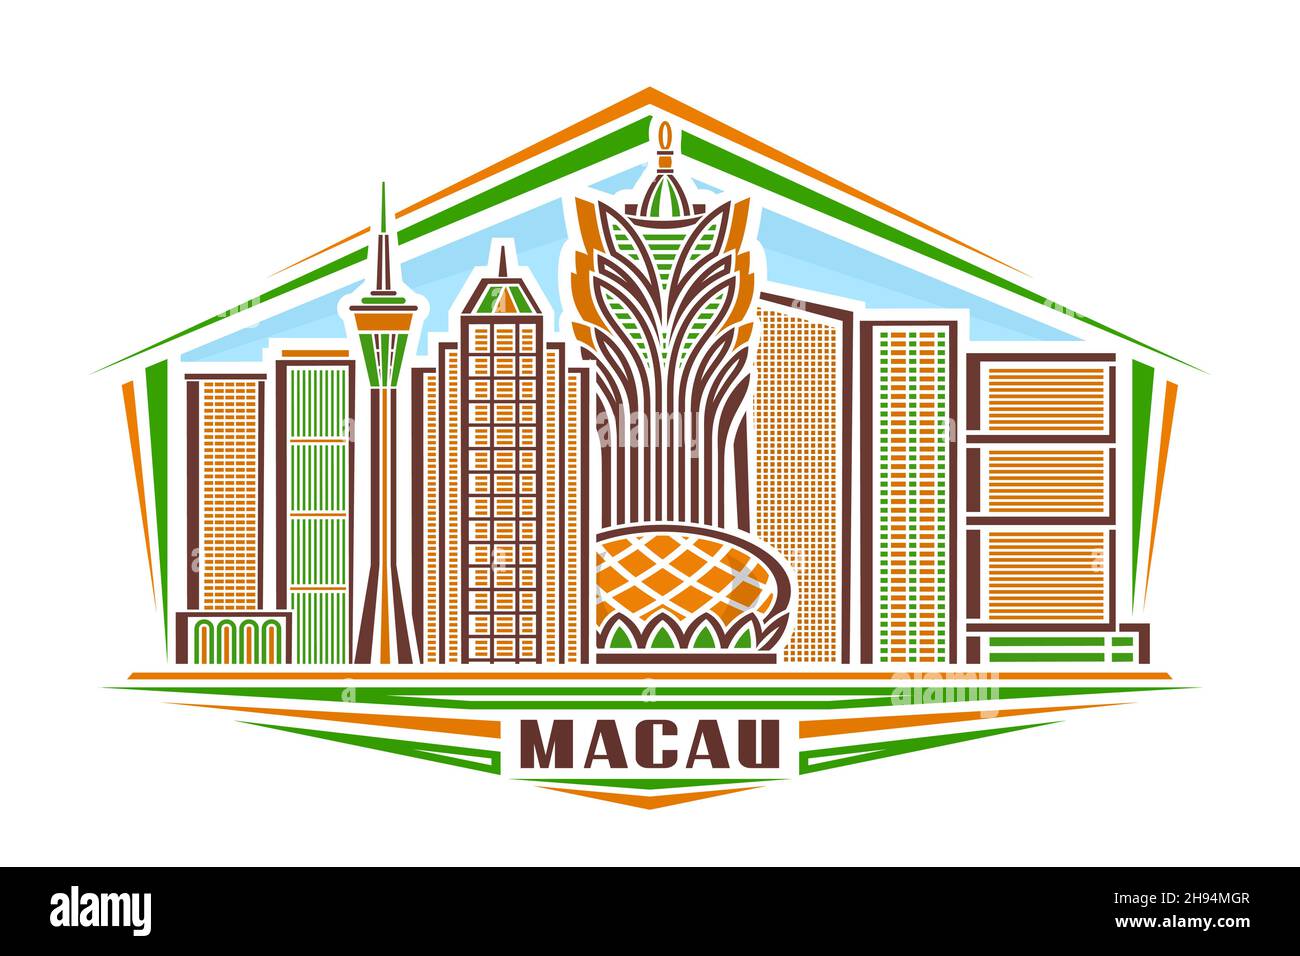 Illustrazione vettoriale di Macau, logo orizzontale con disegno lineare famoso paesaggio cittadino di macau su sfondo cielo di giorno, concetto artistico urbano asiatico con deco Illustrazione Vettoriale